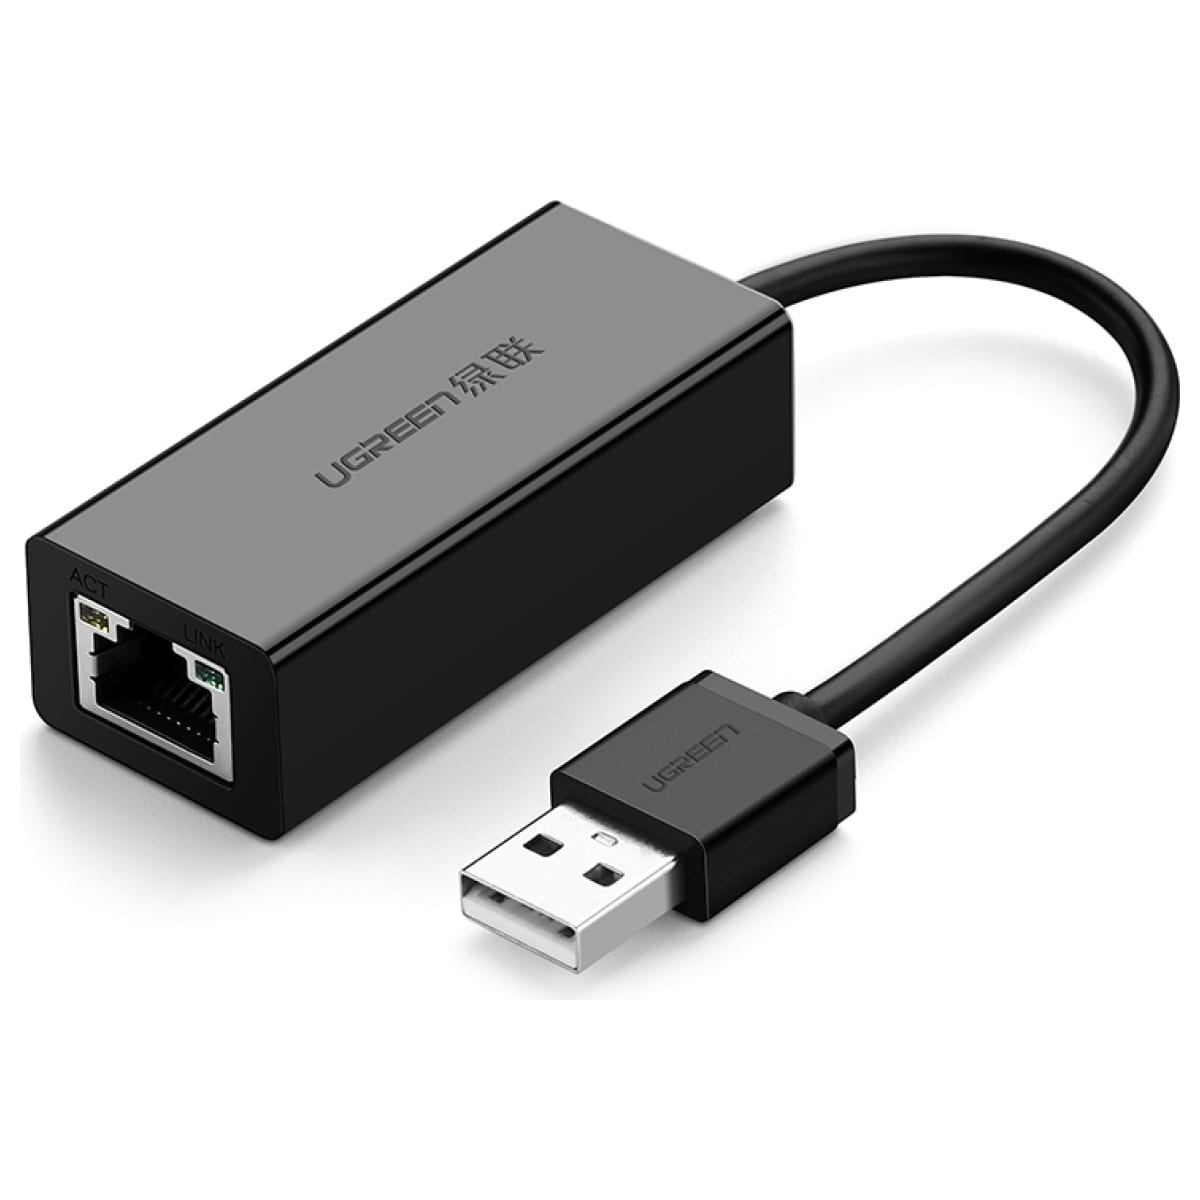 Сетевой адаптер UGREEN USB 2.0, 10/100 Мбит/с, цвет черный (20254) сетевой адаптер ugreen usb c 2 0 lan rj45 10 100 мбит с цвет черный 30287